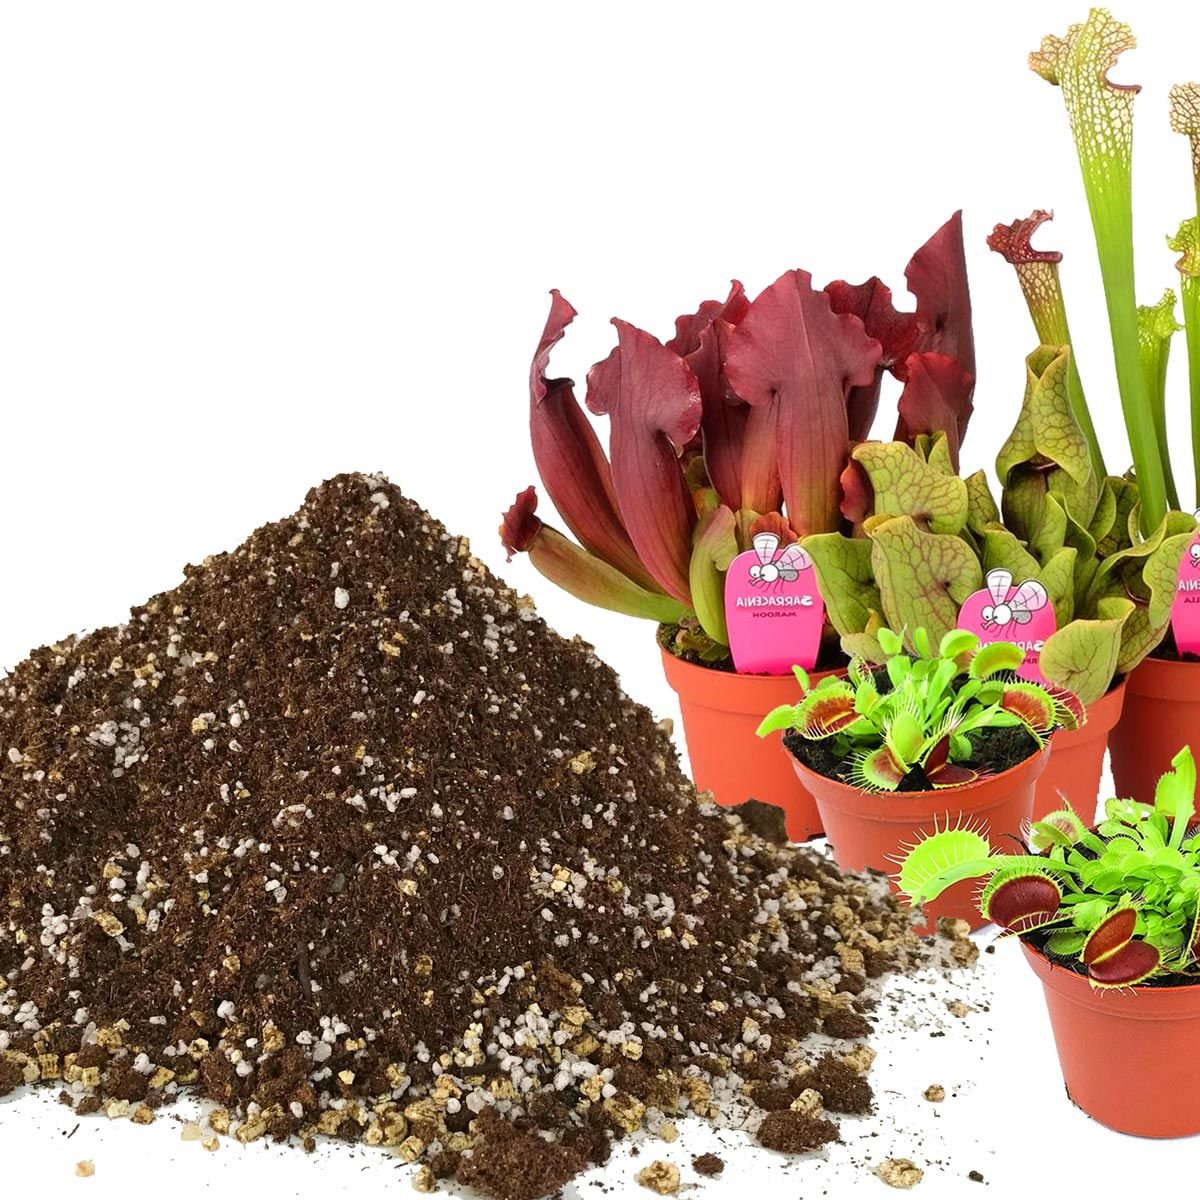 Etobur bitki toprağı carnivorous drosera venus flytrap sarracenia cinsleri için özel